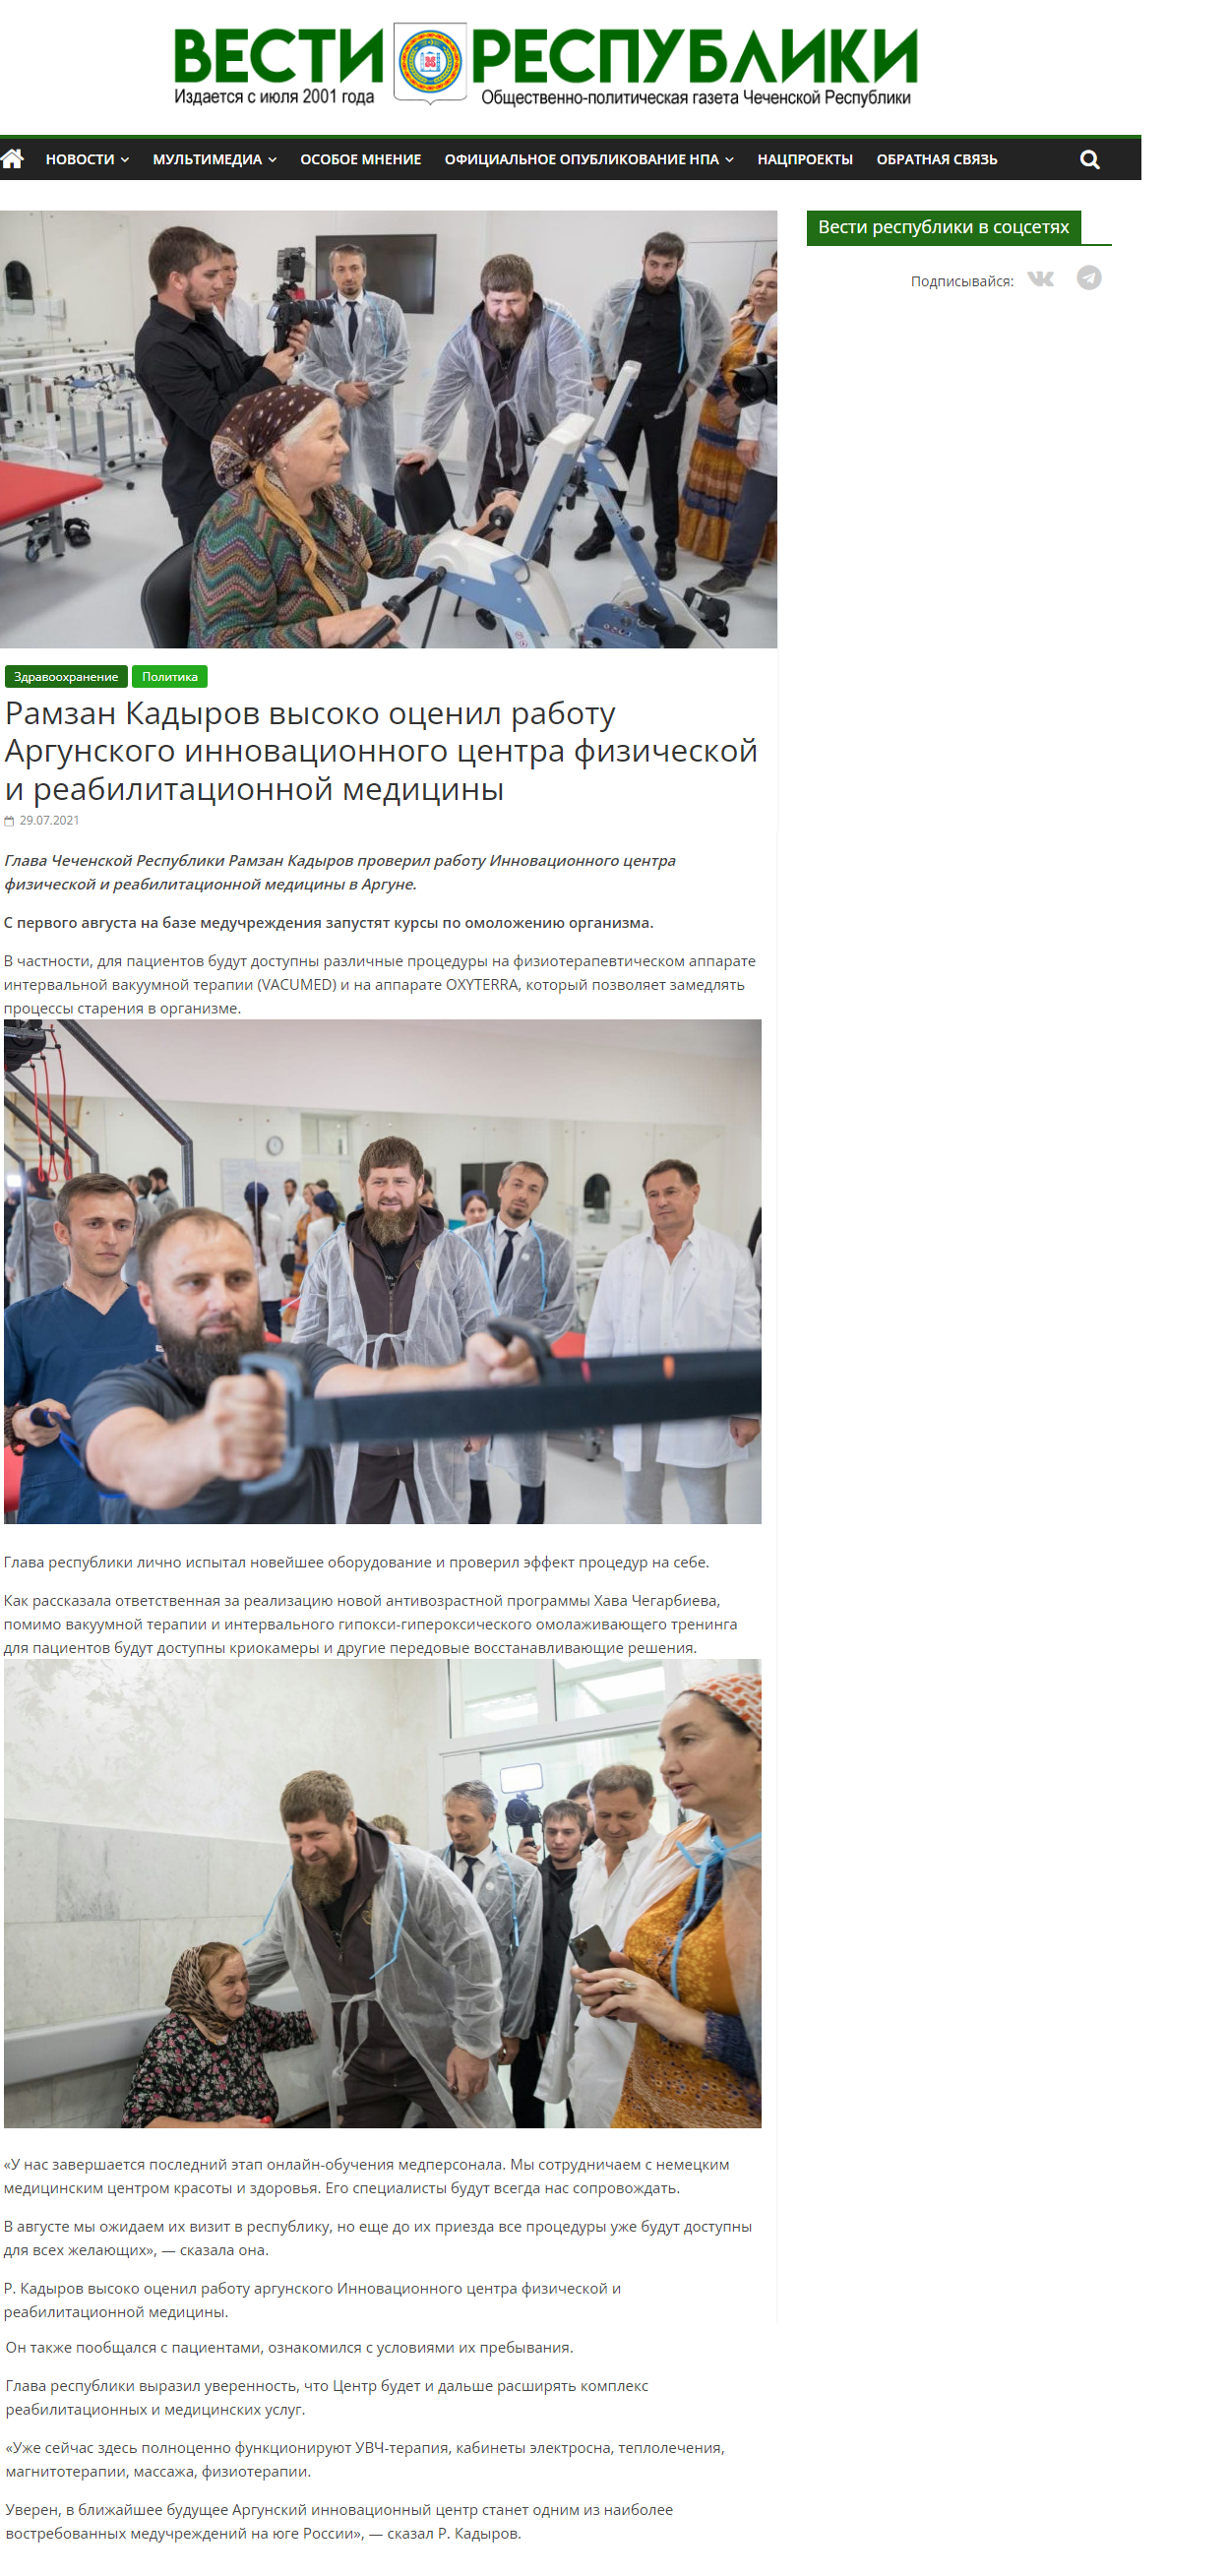 Рамзан Кадыров высоко оценил работу Аргунского инновационного центр